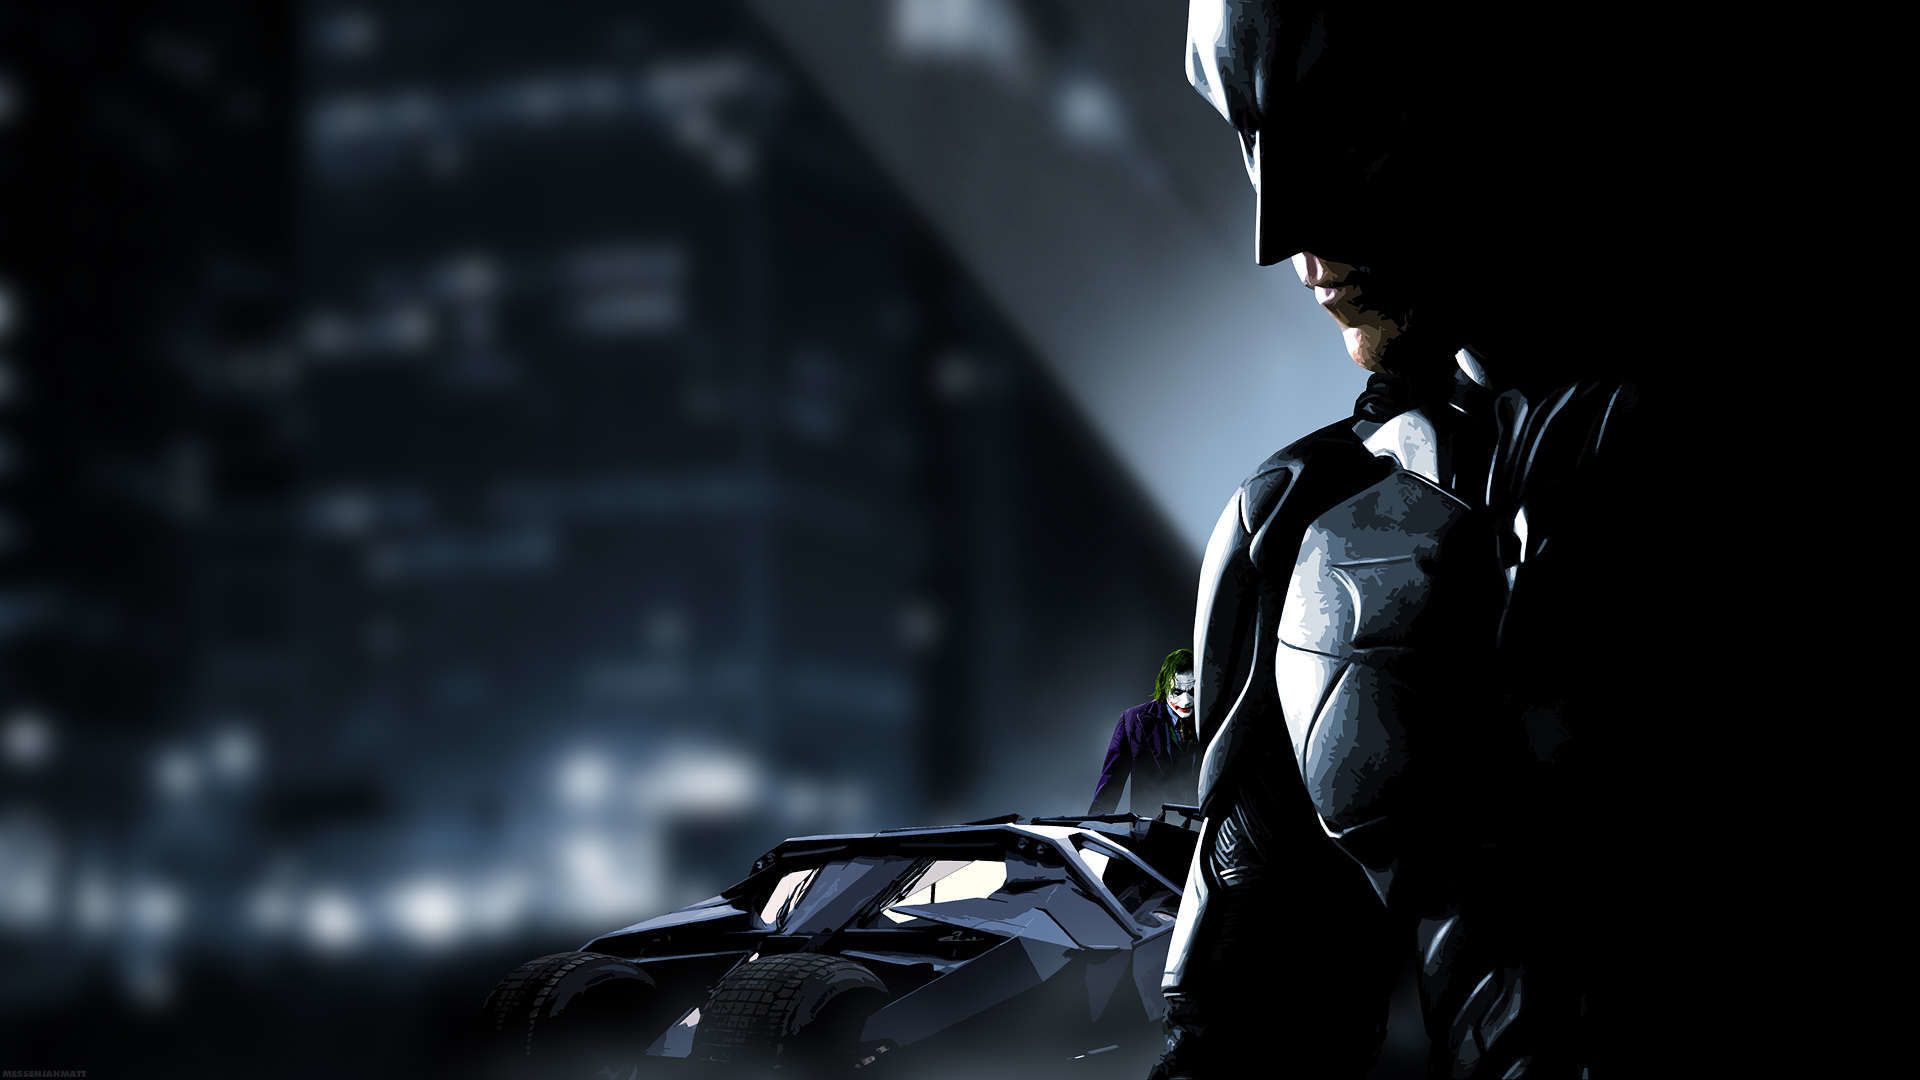 Top 15] Best Batman Wallpapers That Look Amazing | GAMERS DECIDE